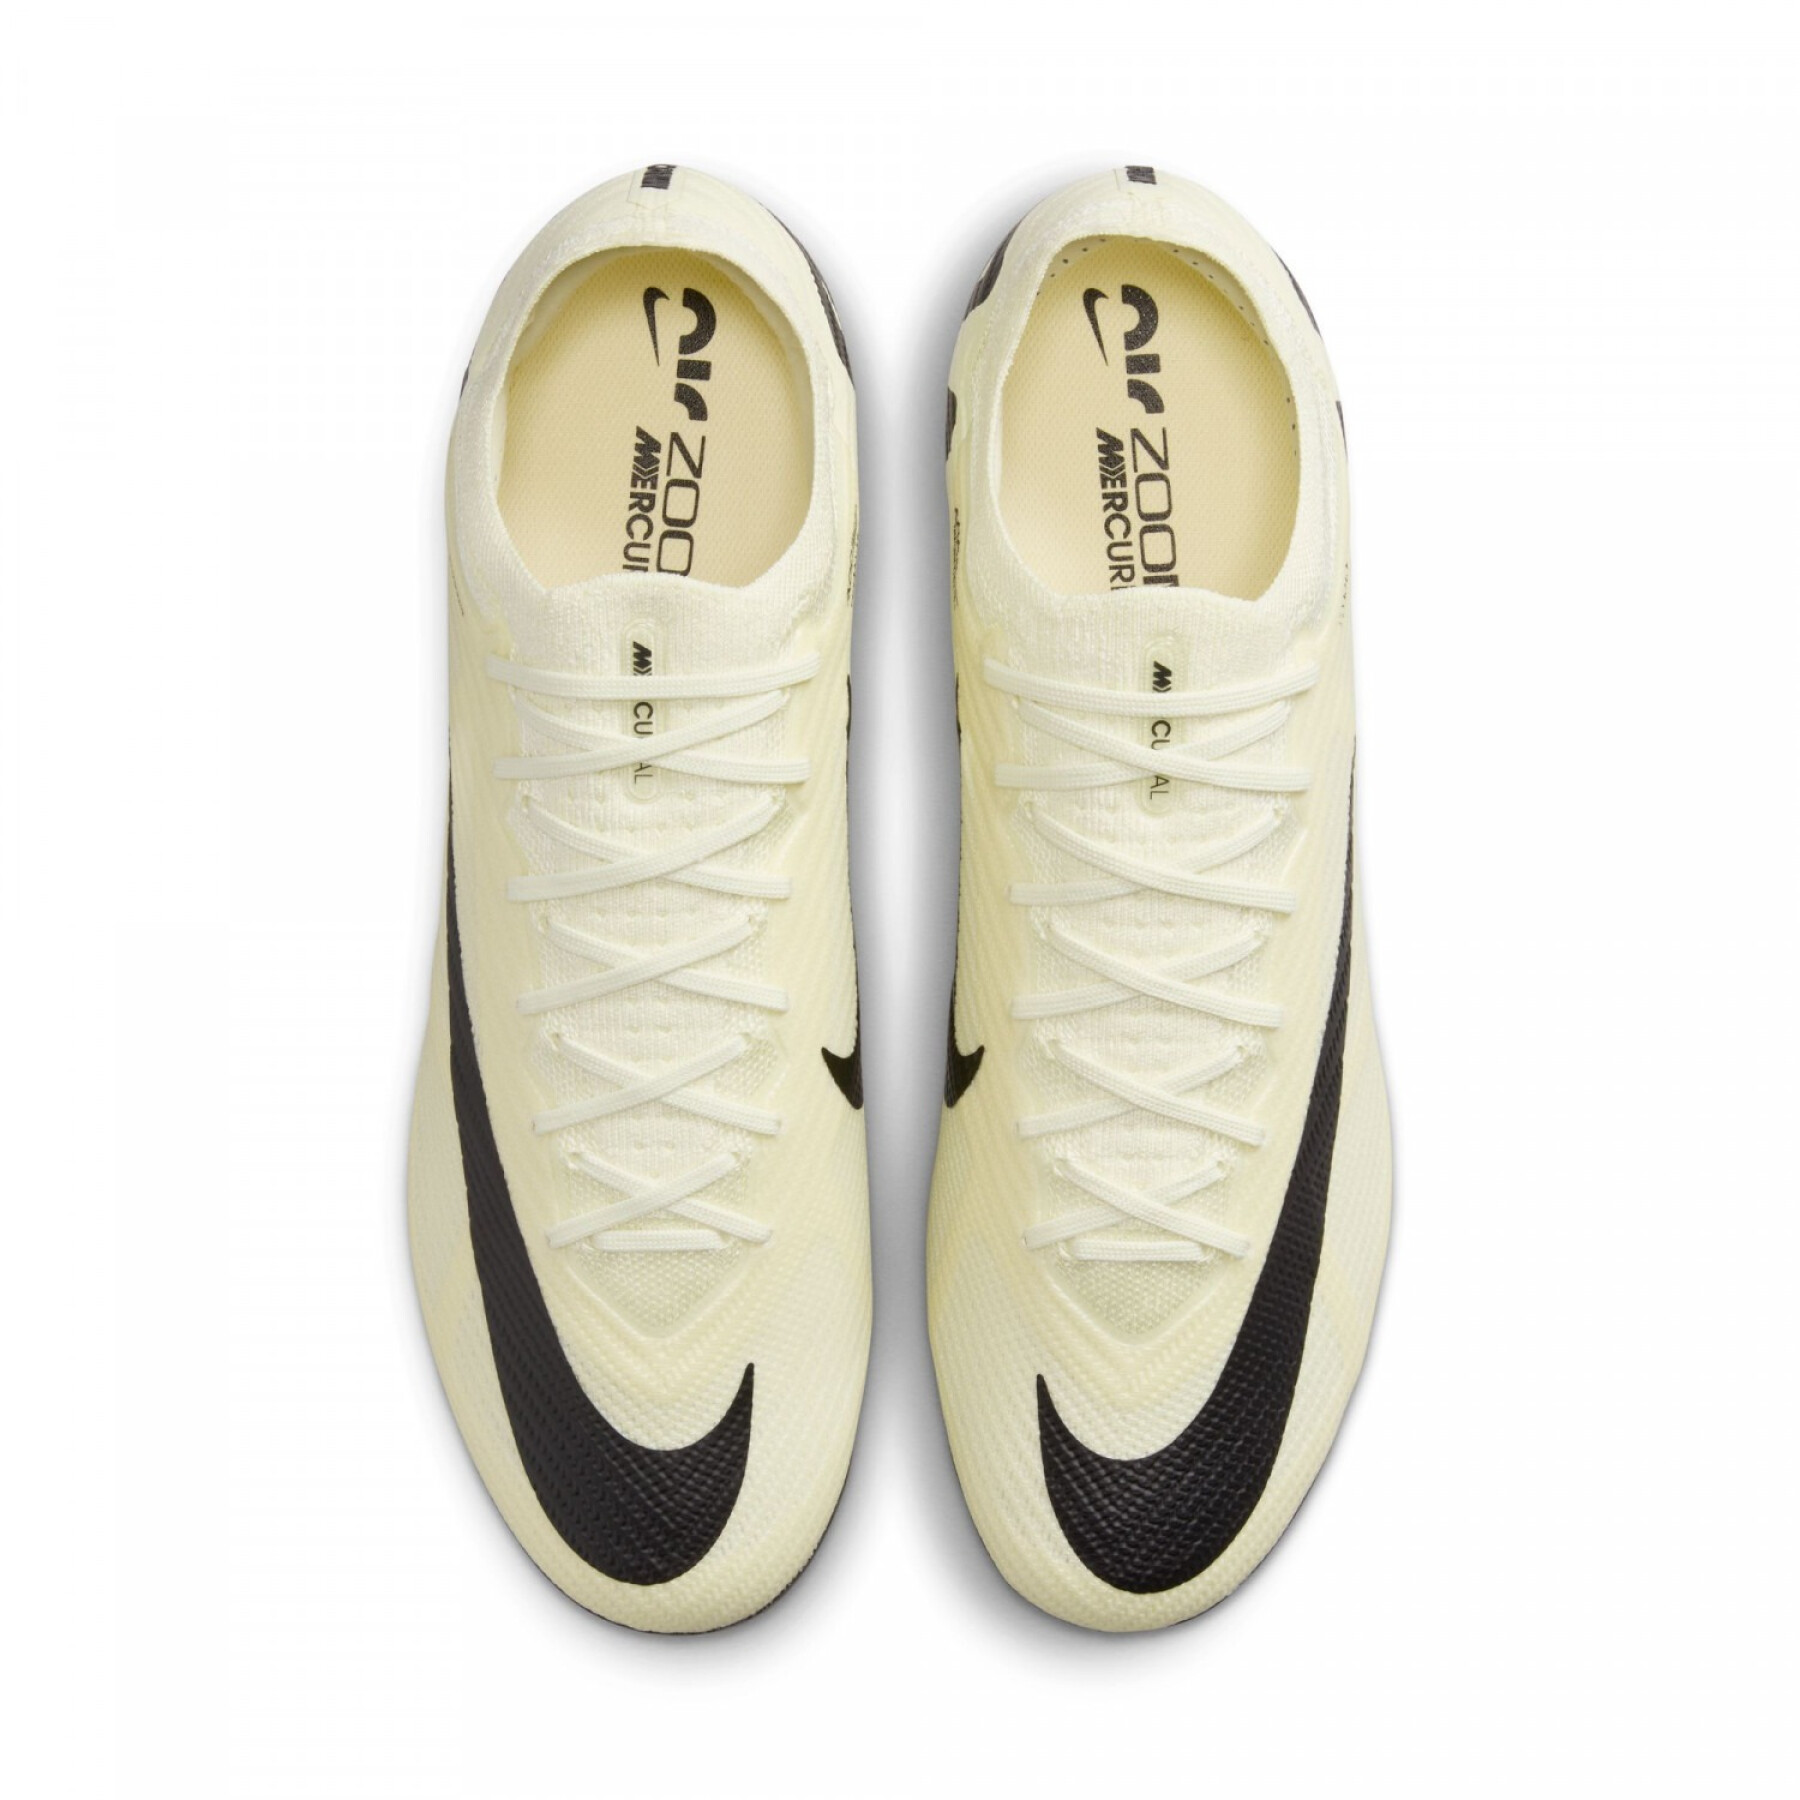 Sapatos de futebol Nike Zoom Mercurial Vapor 15 Elite FG